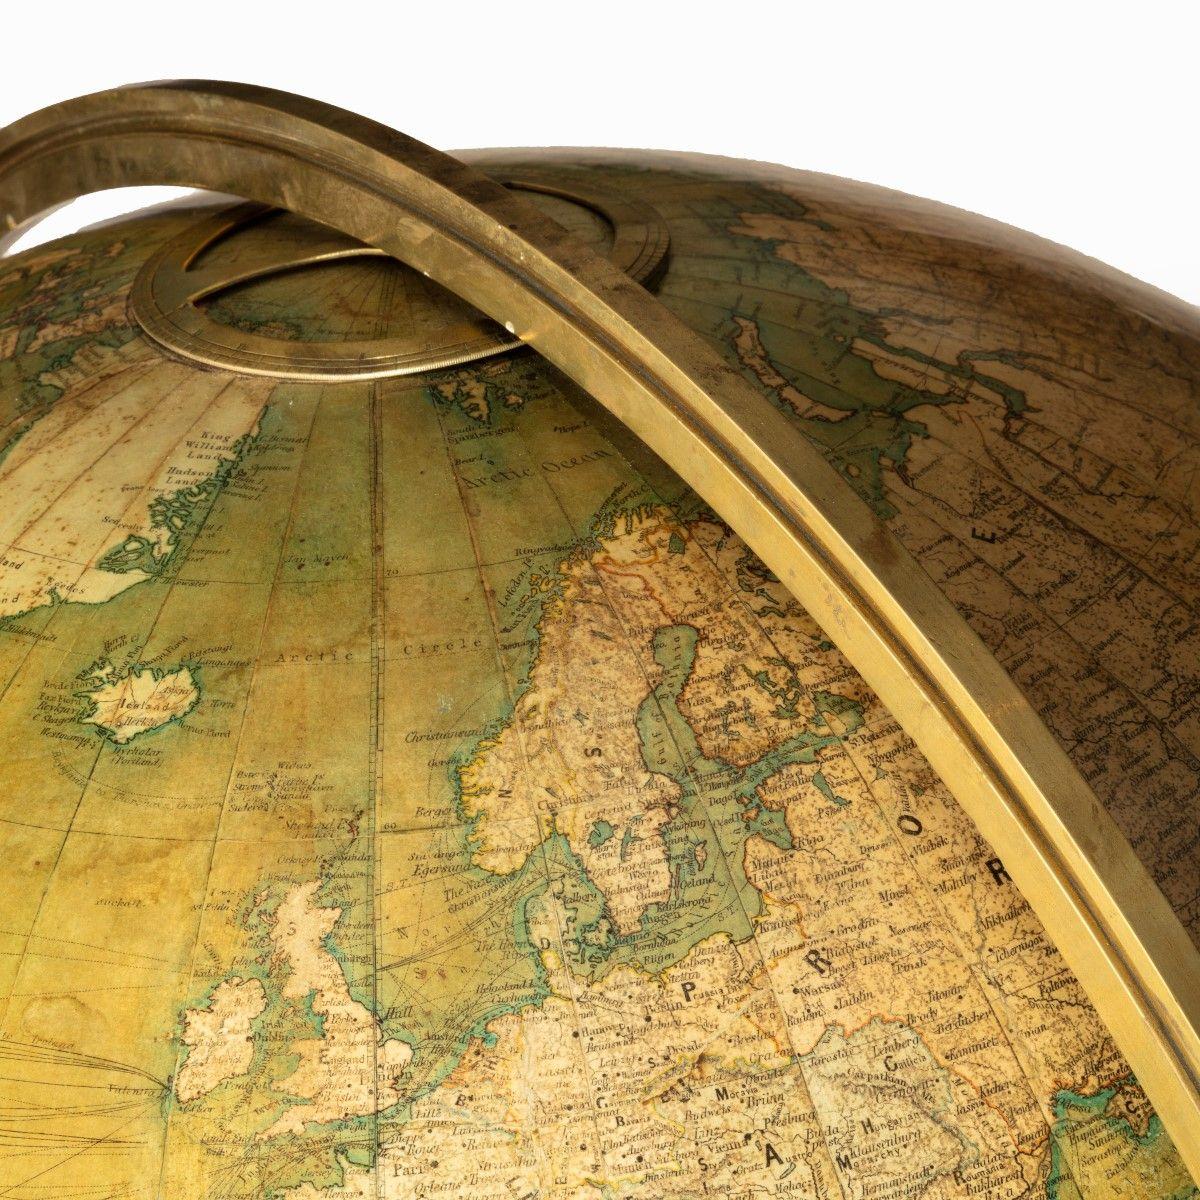 A 30 inch walnut terrestrial globe by W & AK Johnston of Edinburgh & London